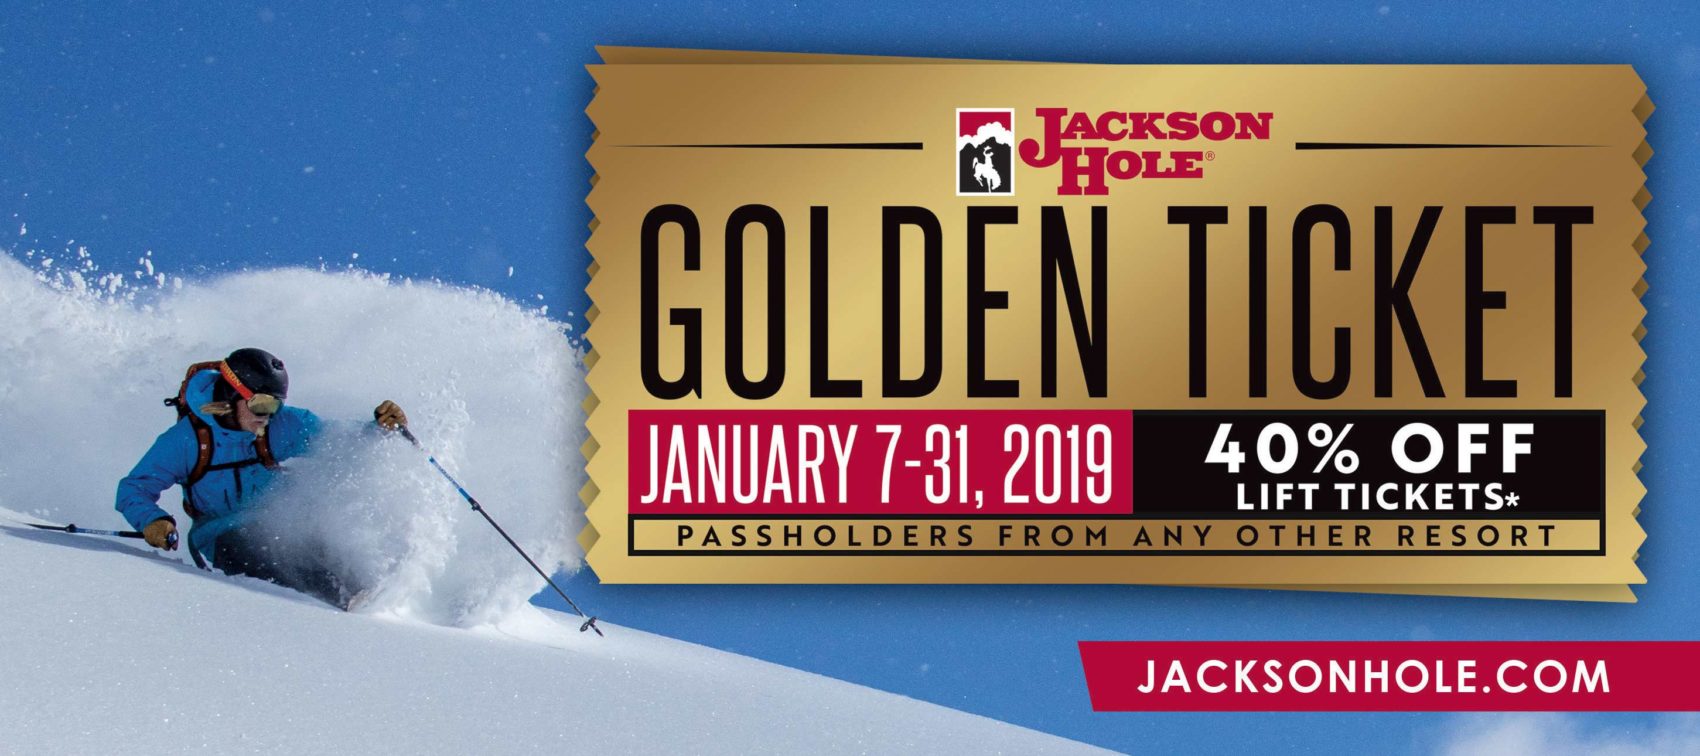 Jackson Hole, wyoming, golden ticket